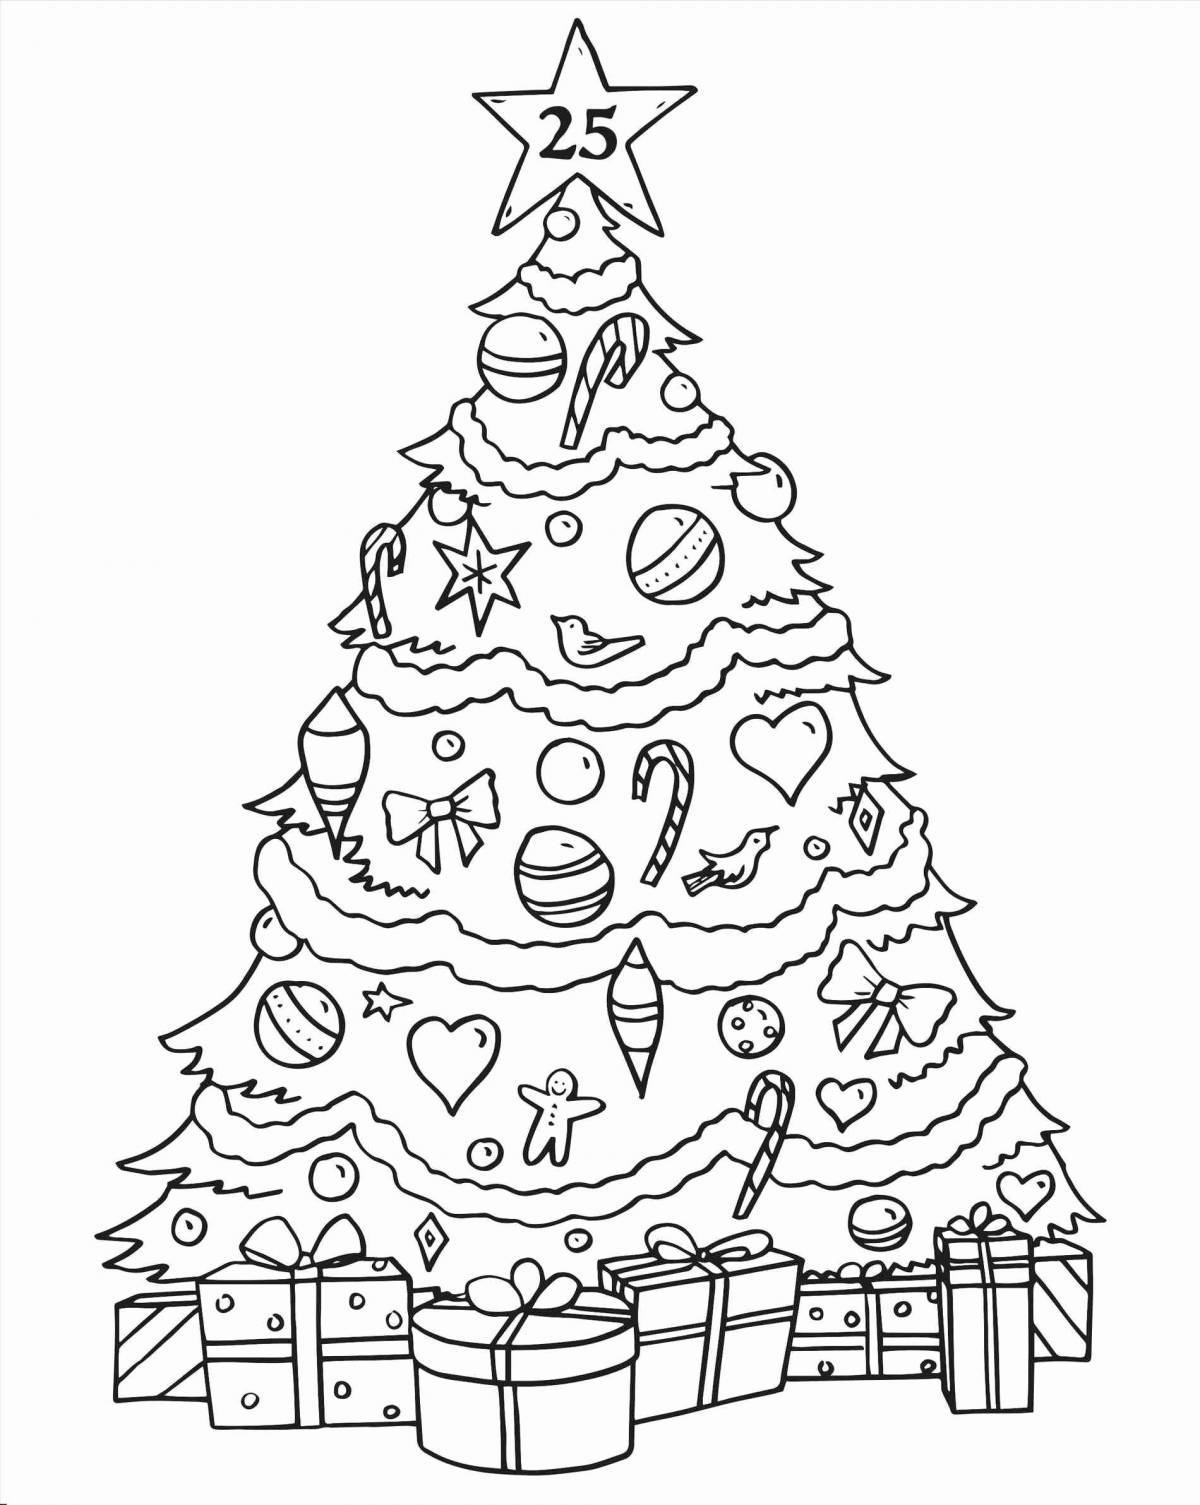 Анимированная раскраска рождественская елка